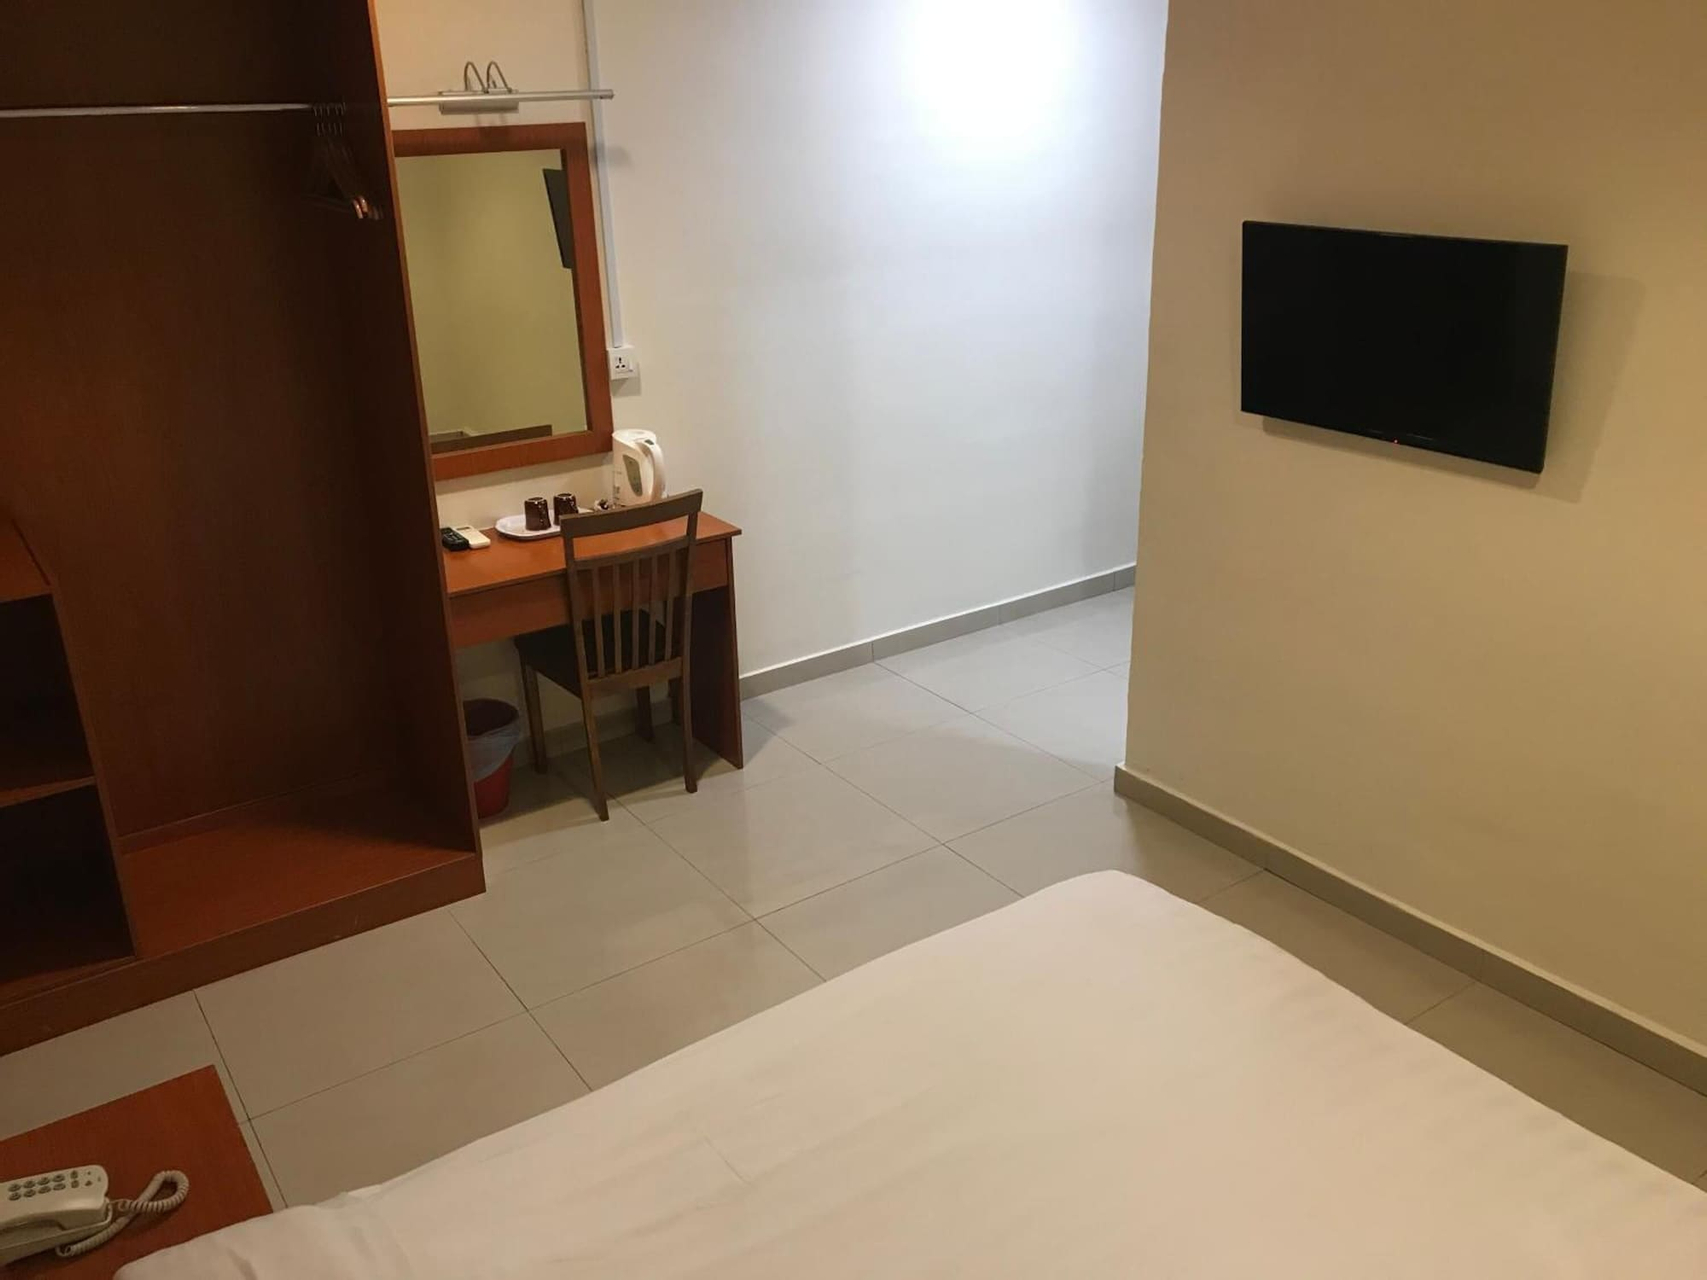 Bedroom 3, Aeton Hotel, Seremban